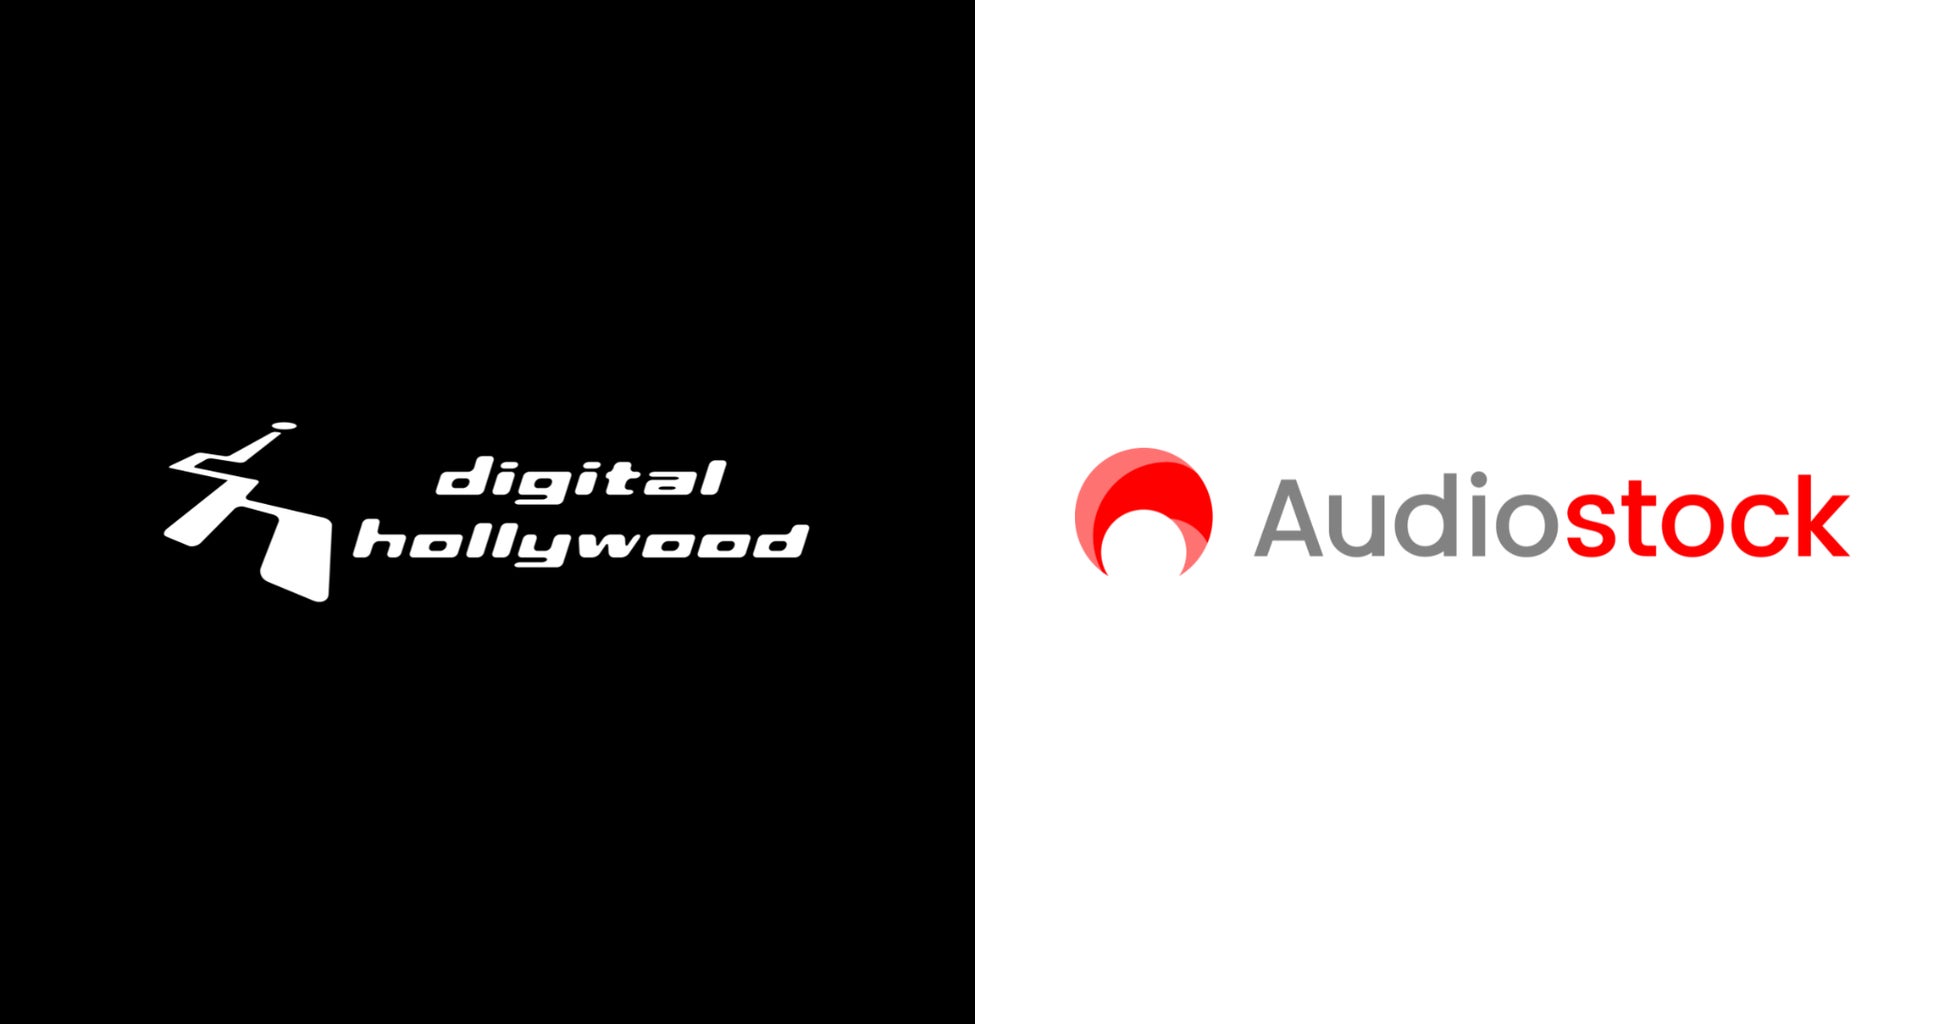 デジタルハリウッド株式会社、世界最大級のロイヤリティフリーのストックミュージックサービス「Audiostock」と連携